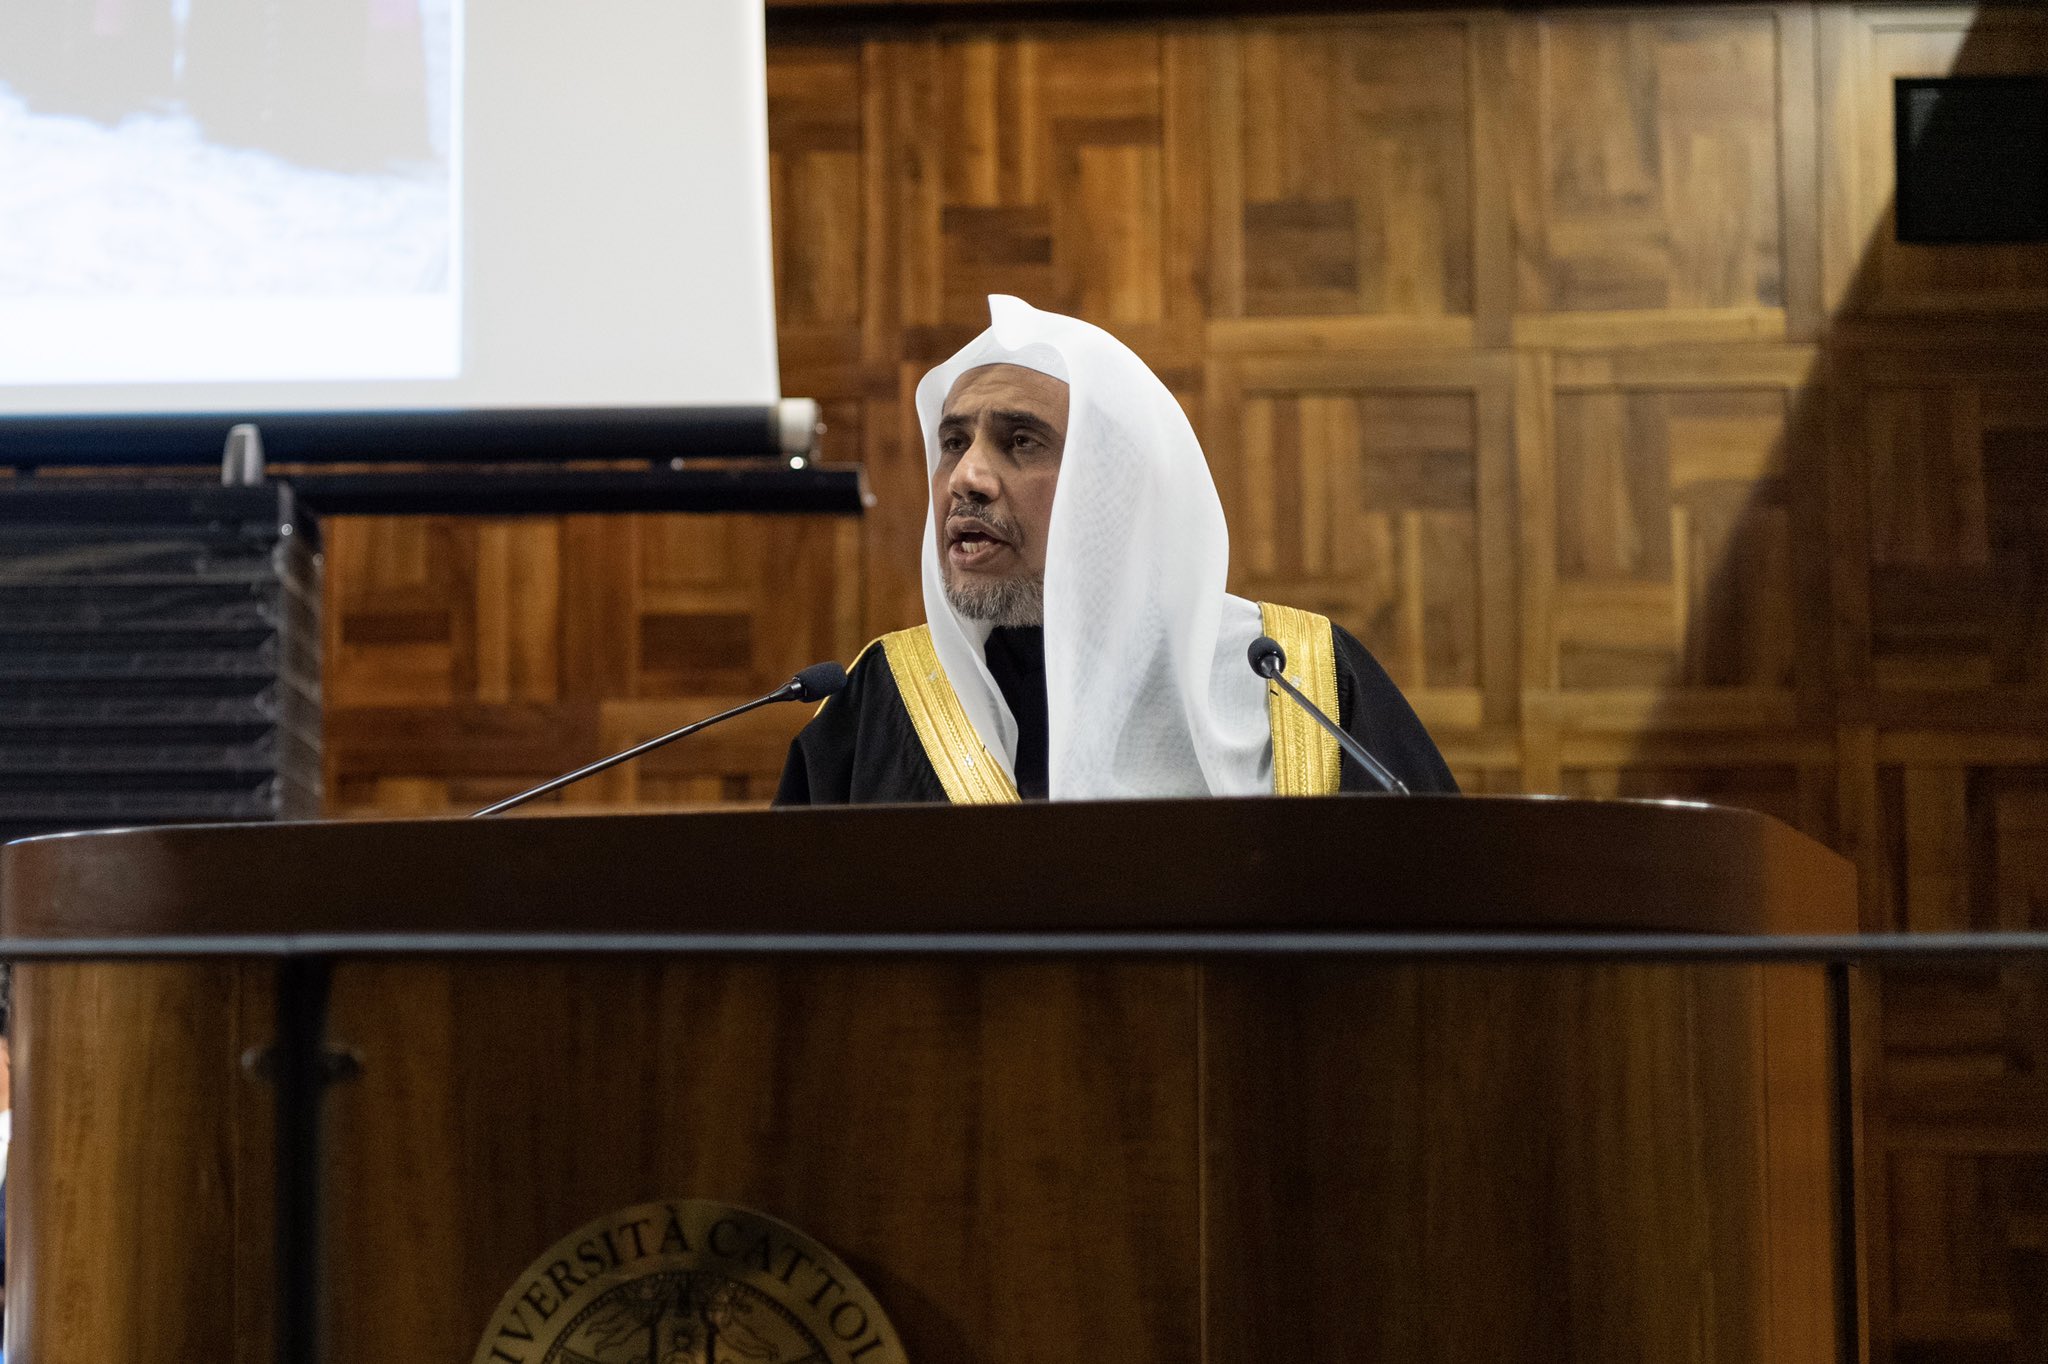 Mohammad Alissa lors de la conférence à l'Université catholique, loue les positions justes et déclarées du  Pape François sur   Islam, et les efforts de l'icône du dialogue chrétien moderne avec l'Islam Cardinal Tauran.